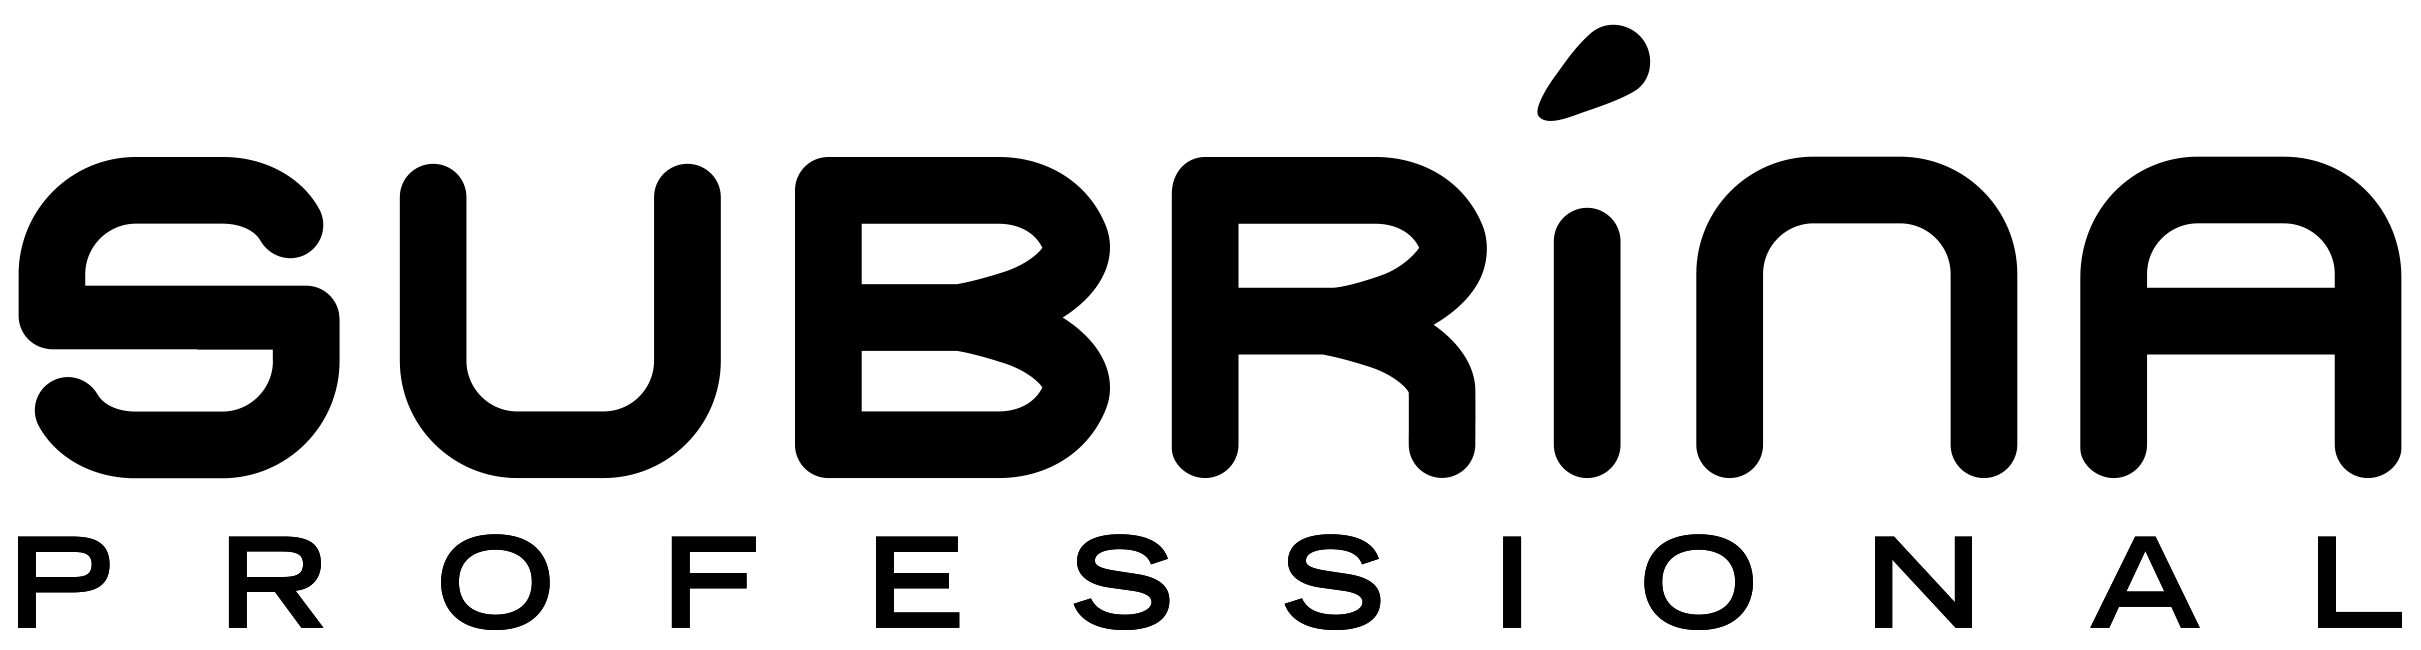 Косметика бренда Subrina Professional, логотип